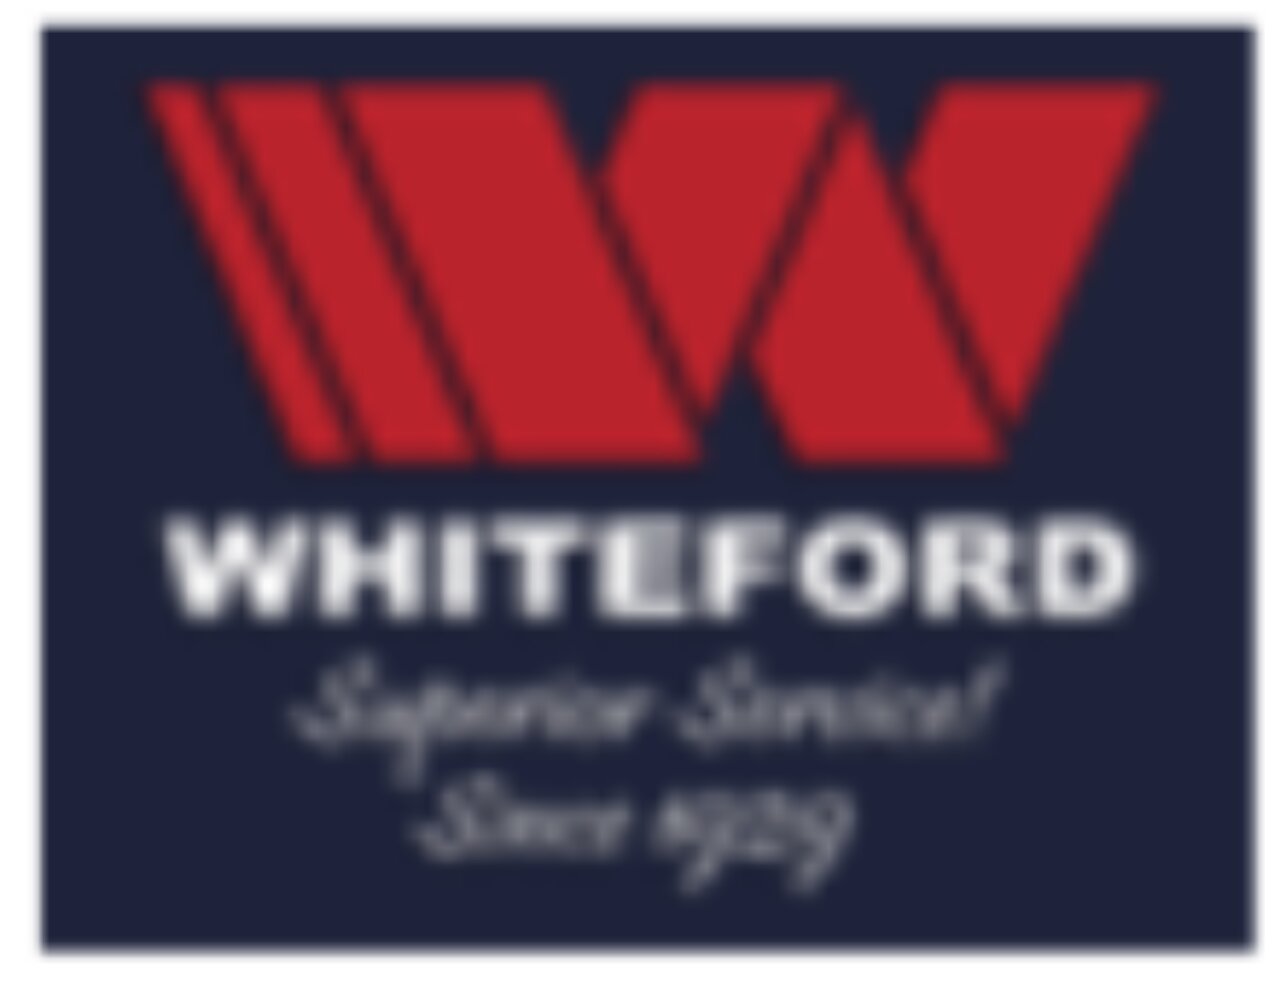 WHITEFORD